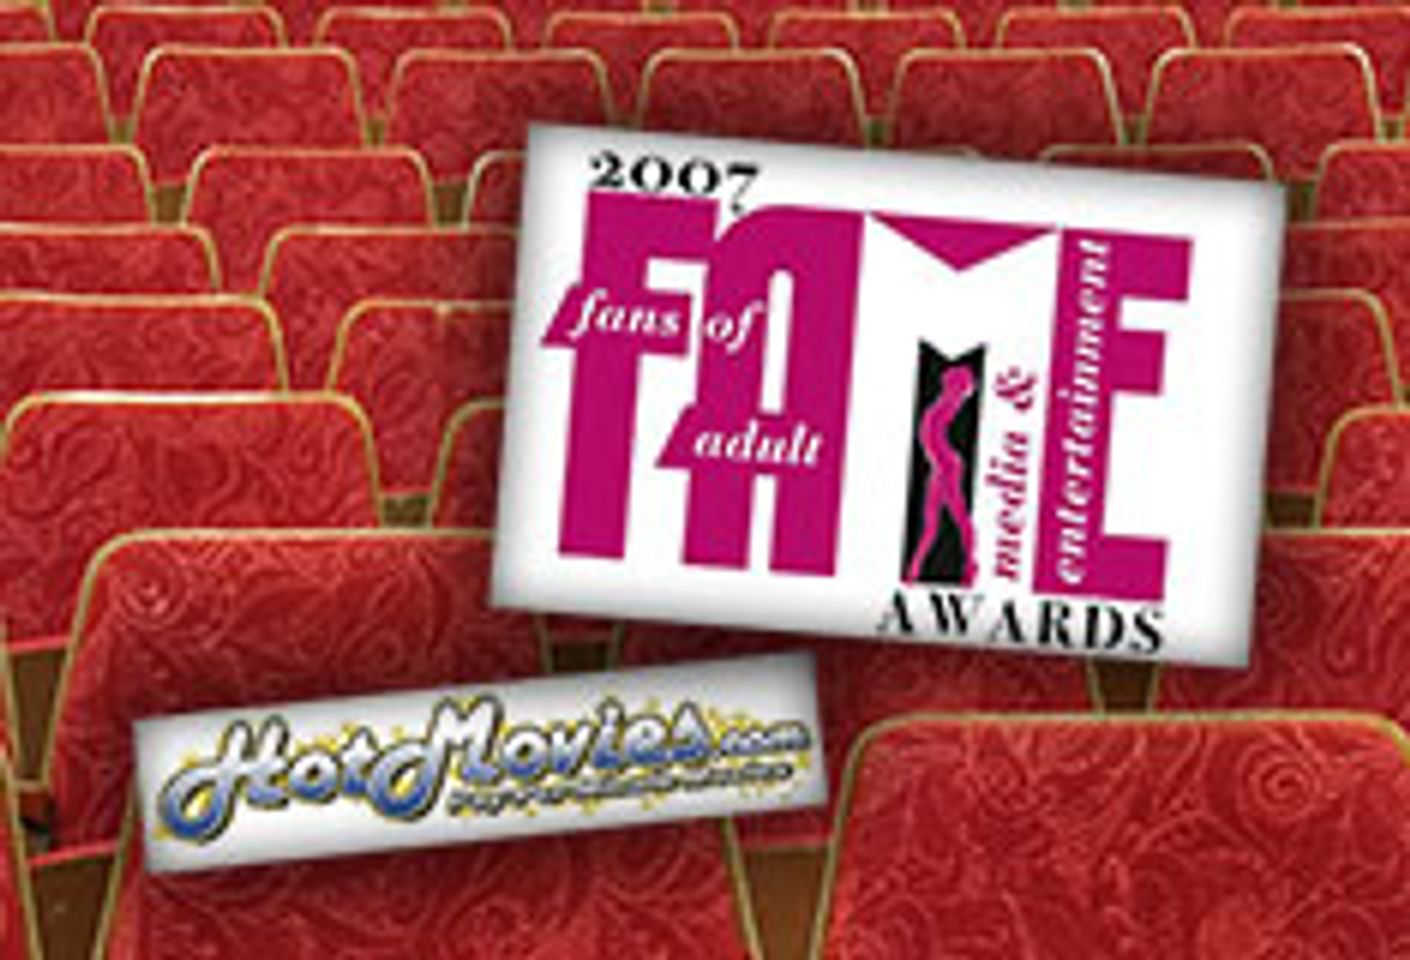 F.A.M.E. Awards Adds HotMovies.com as Gold Sponsor